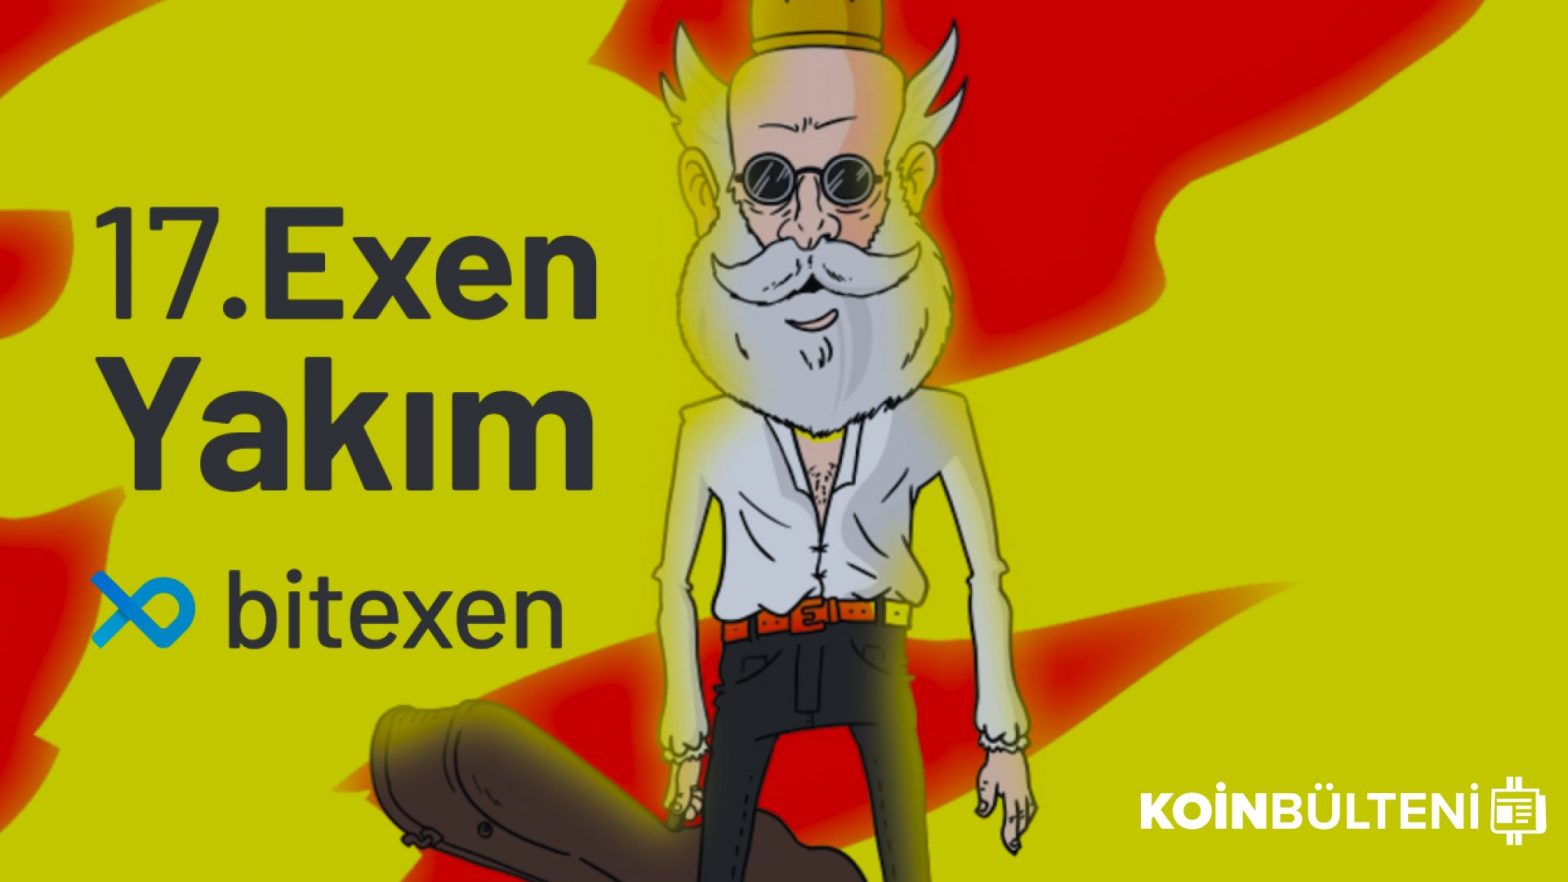 Bitexen烧掉了大约15万粒EXEN